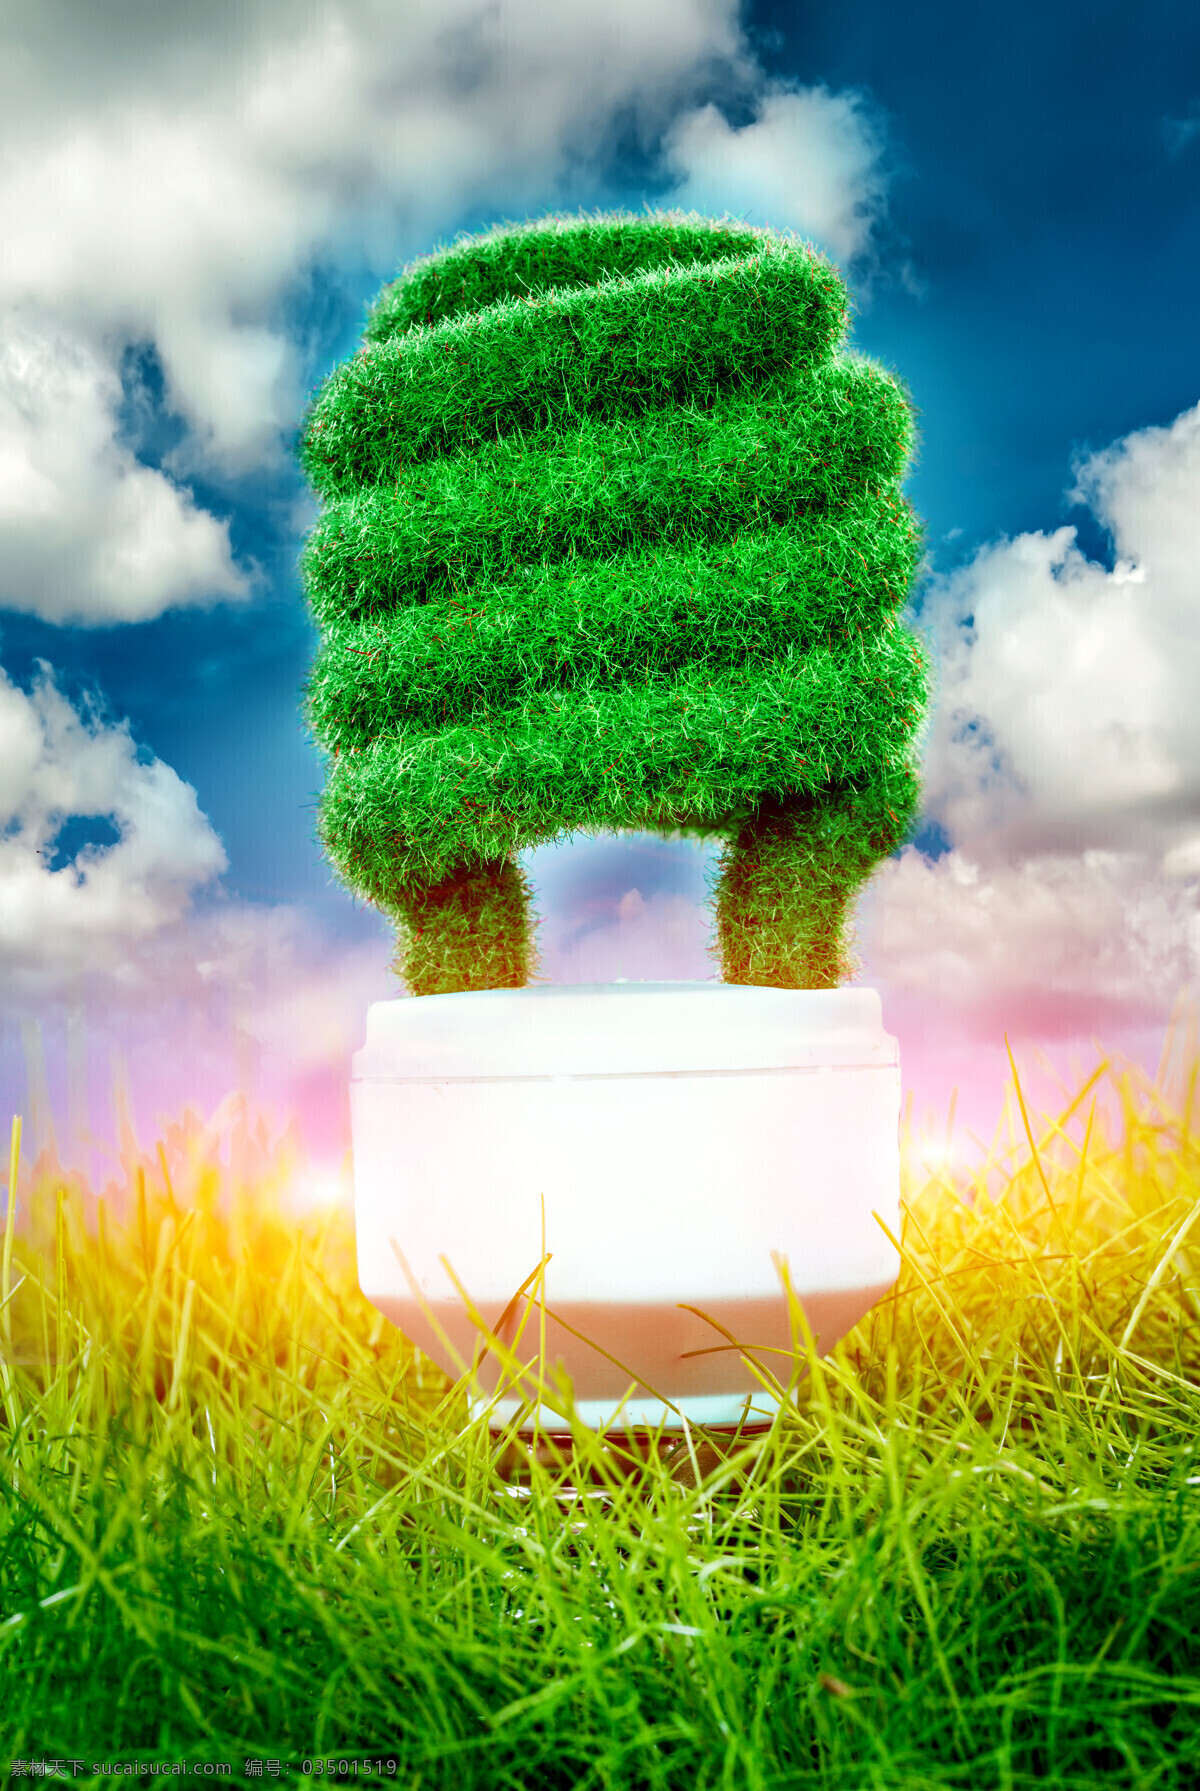 创意灯泡 现代科技 网络技术 商务创新 绿色生态环境 低碳 节能环保 节能 节能灯 灯泡图片 背景图片